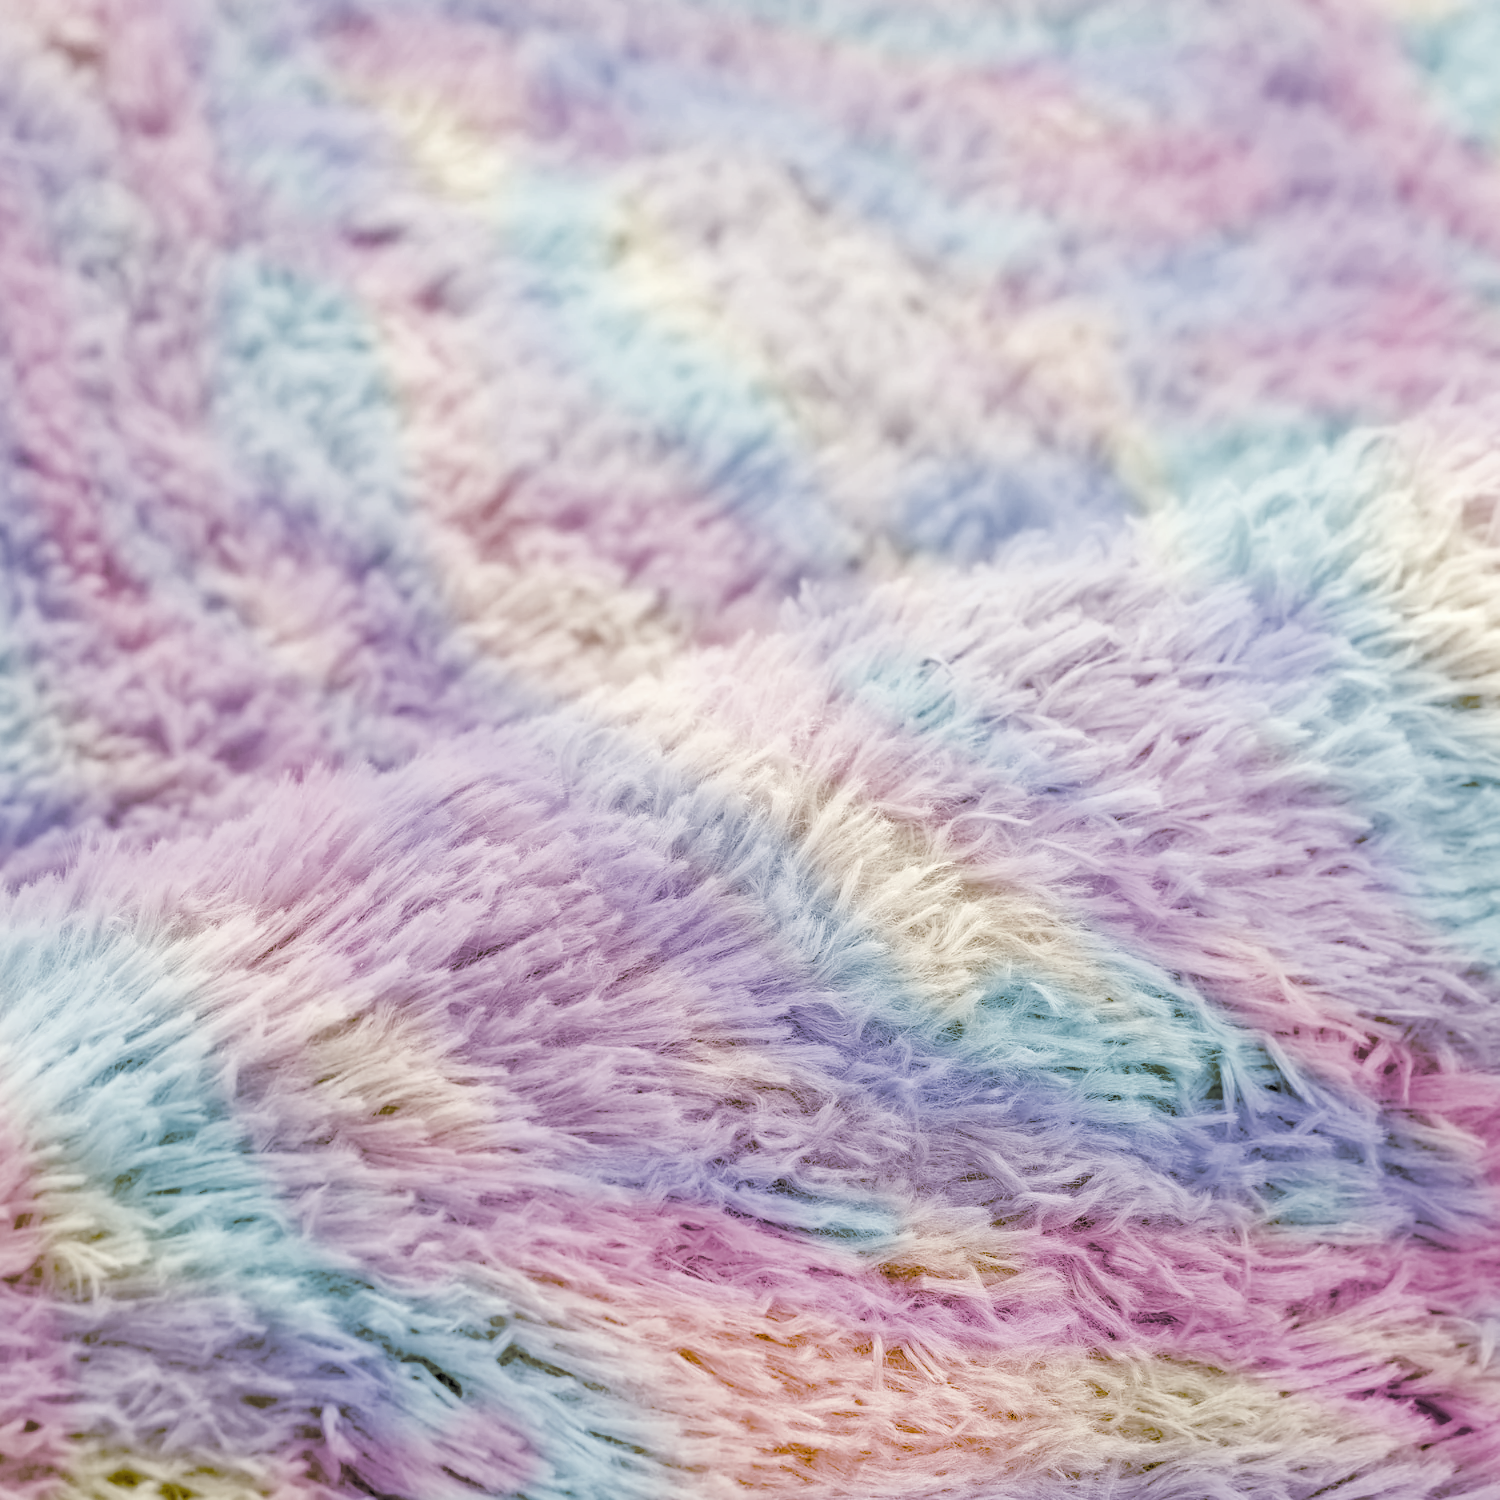 Rainbow Shaggy Rug Large Fluffy Carpet